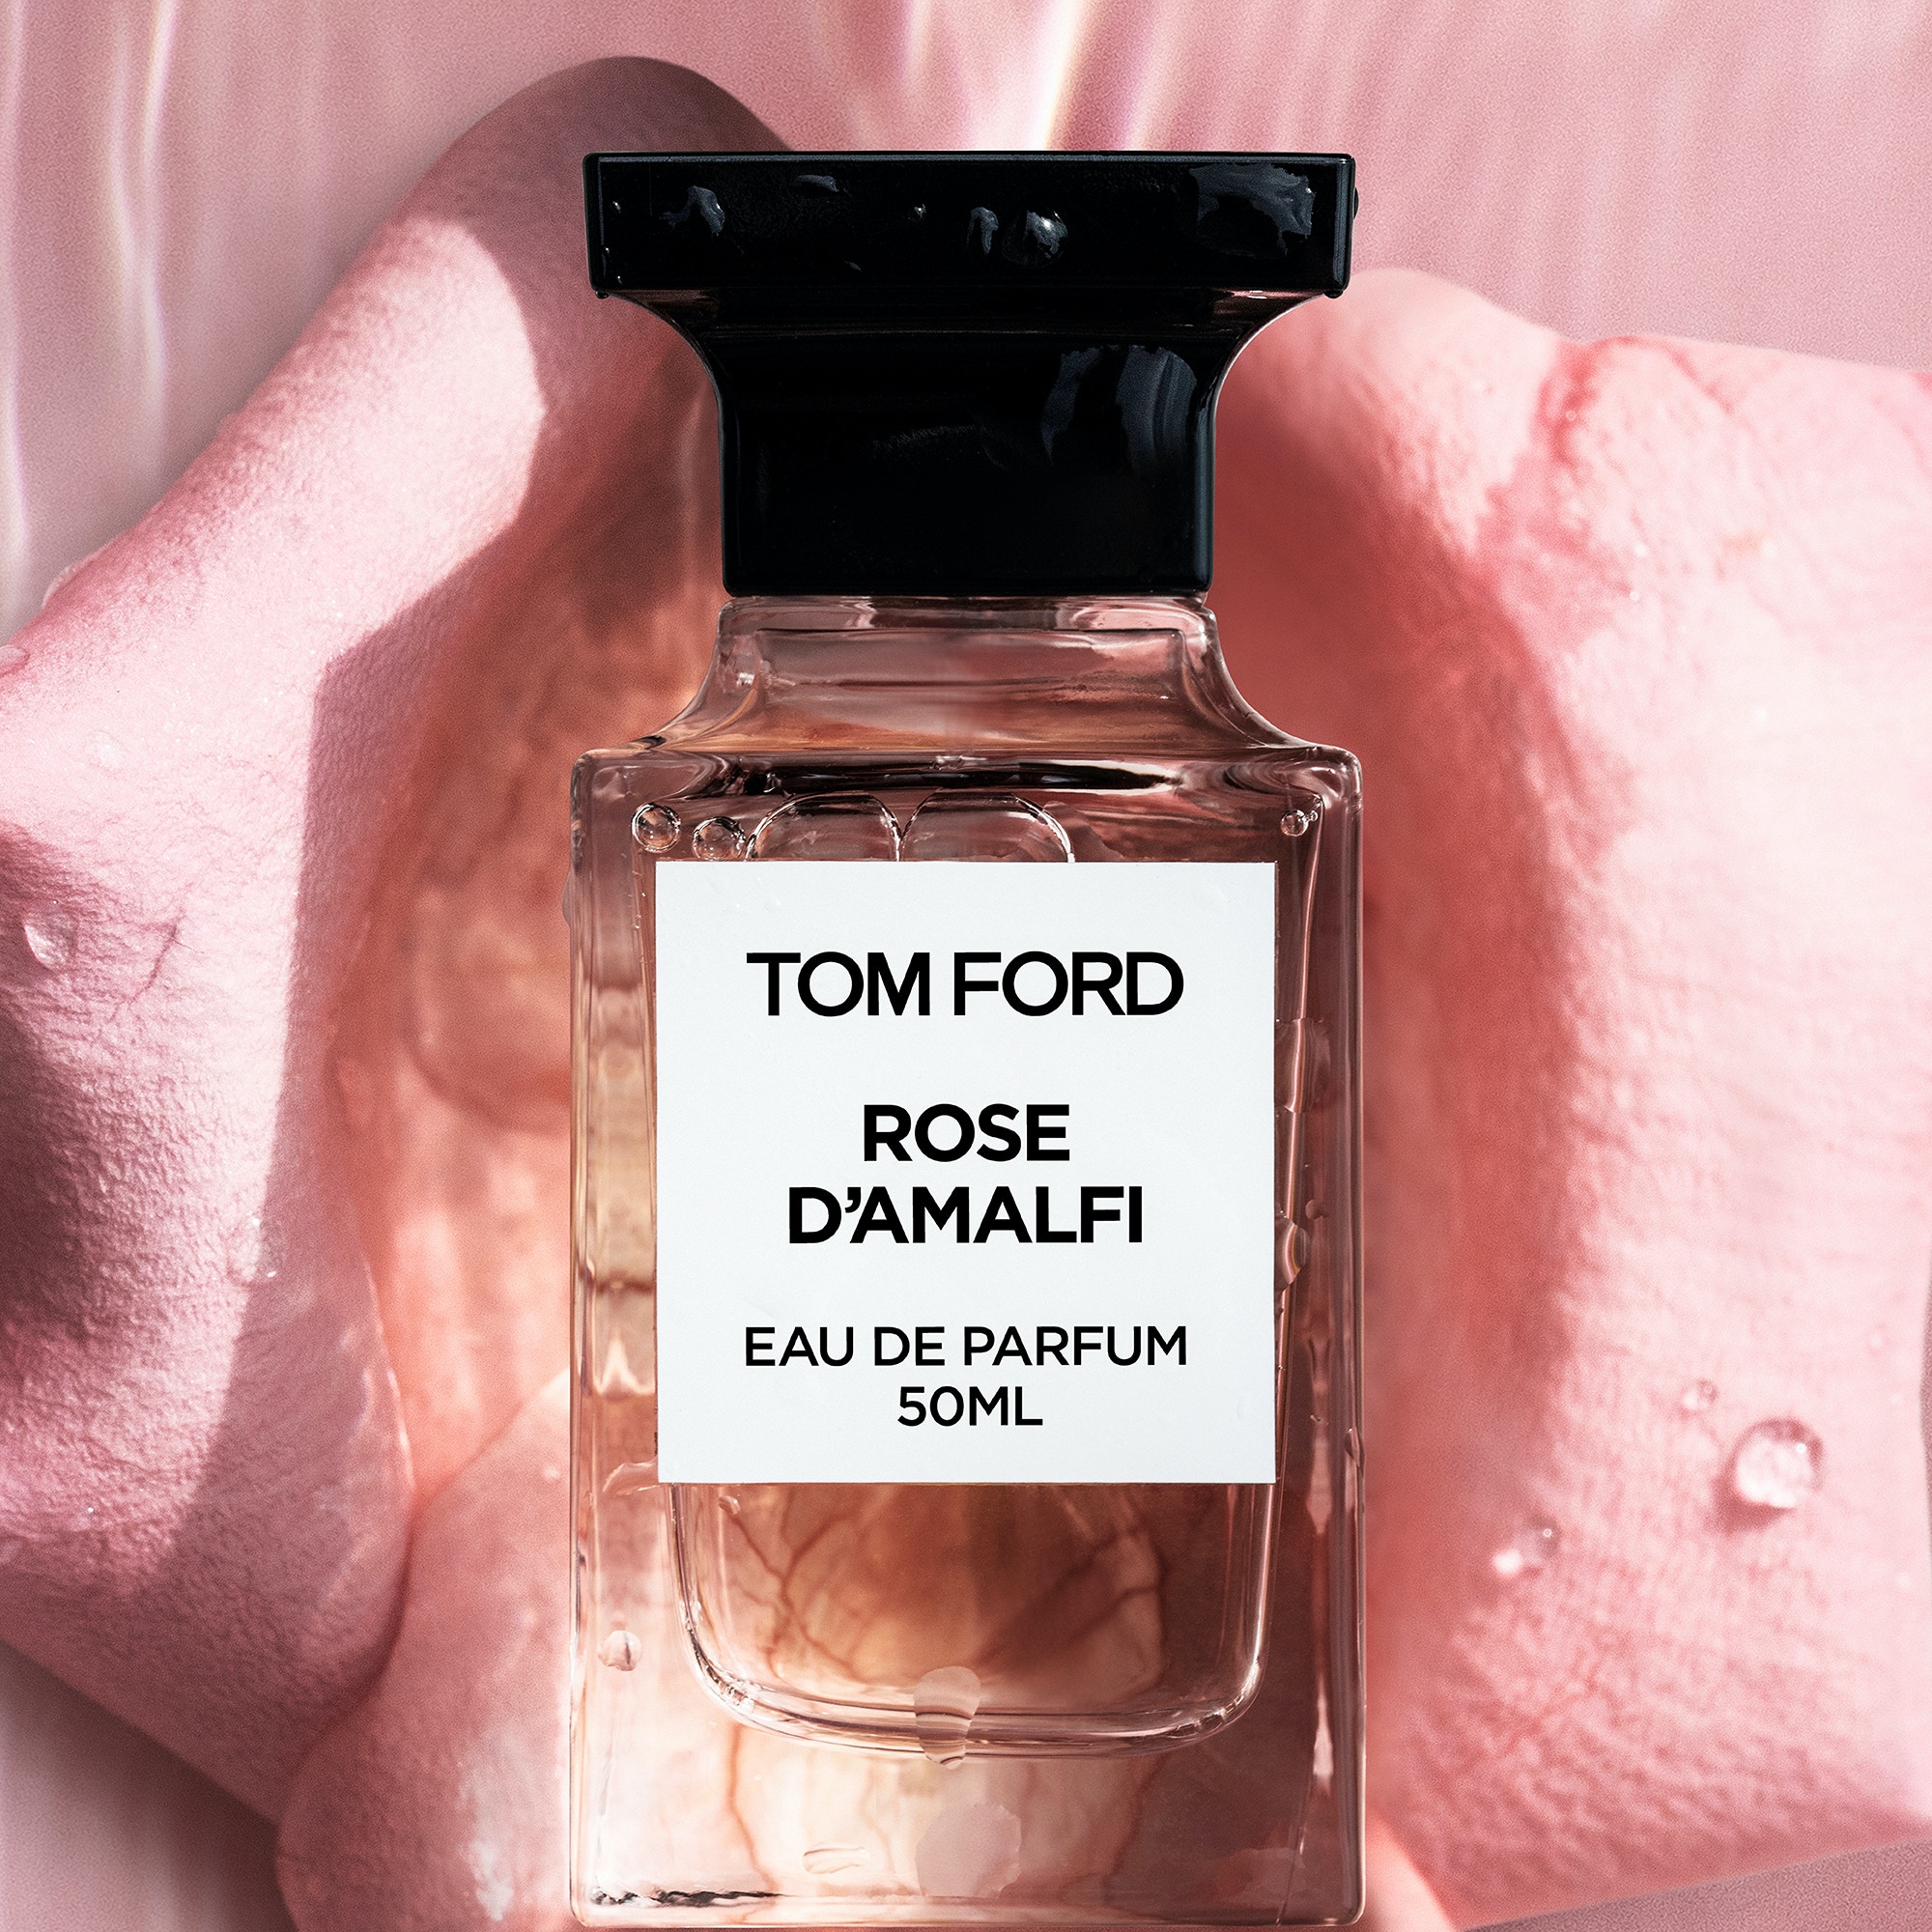 情人節禮物22 Tom Ford新香水曝光玫瑰是情人節最誘人香水